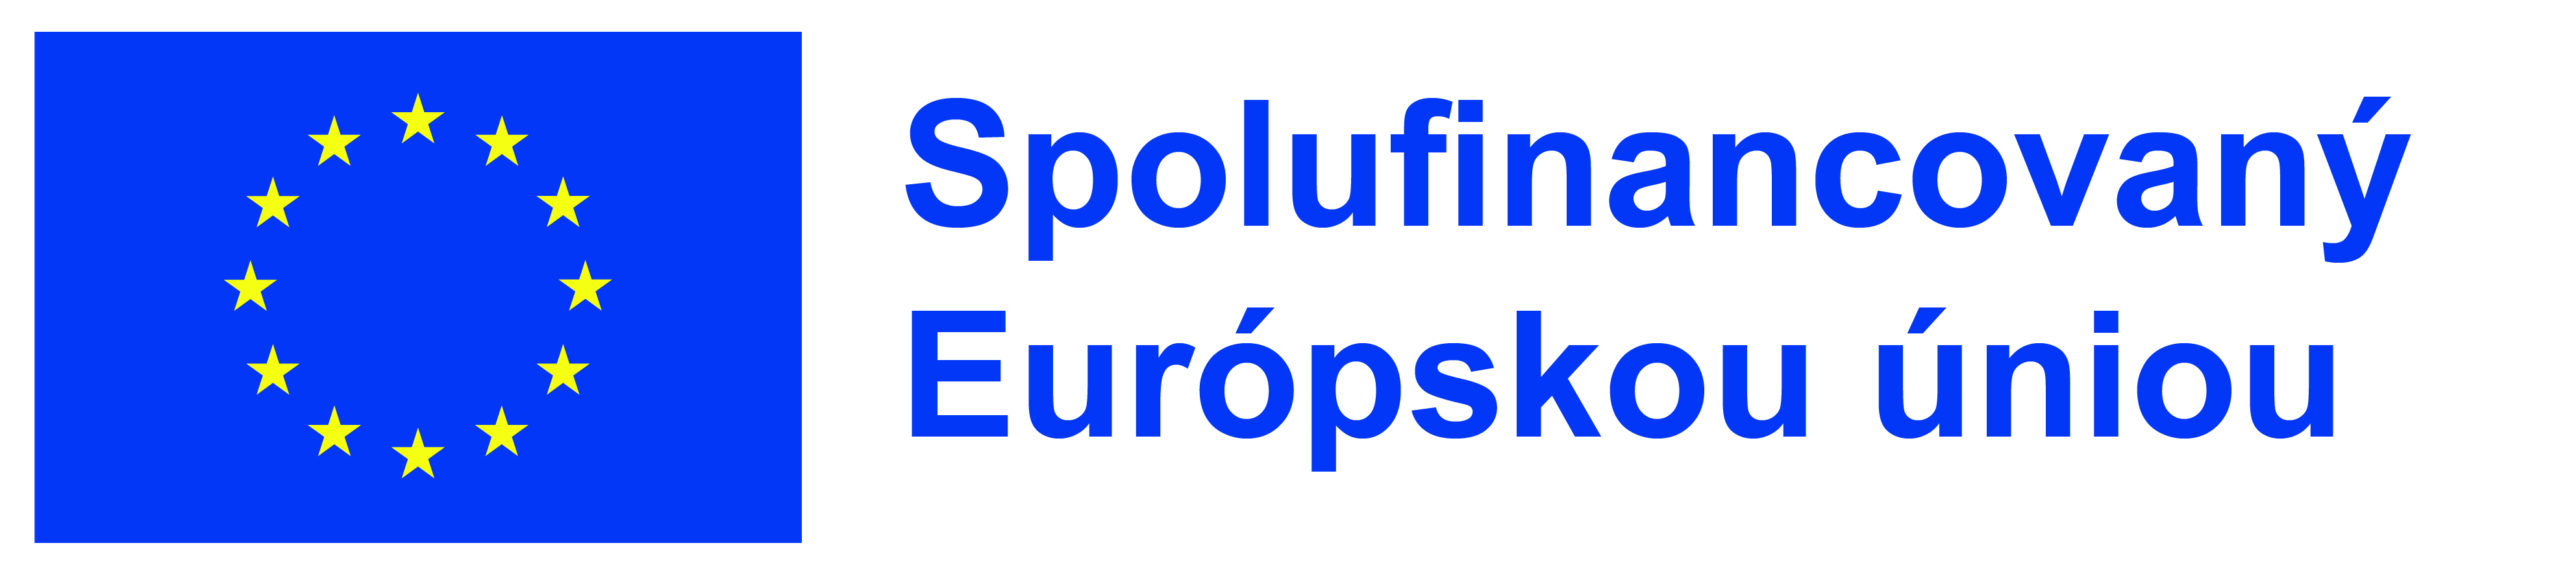 SK-Spolufinancovany-Europskou-uniou_POS